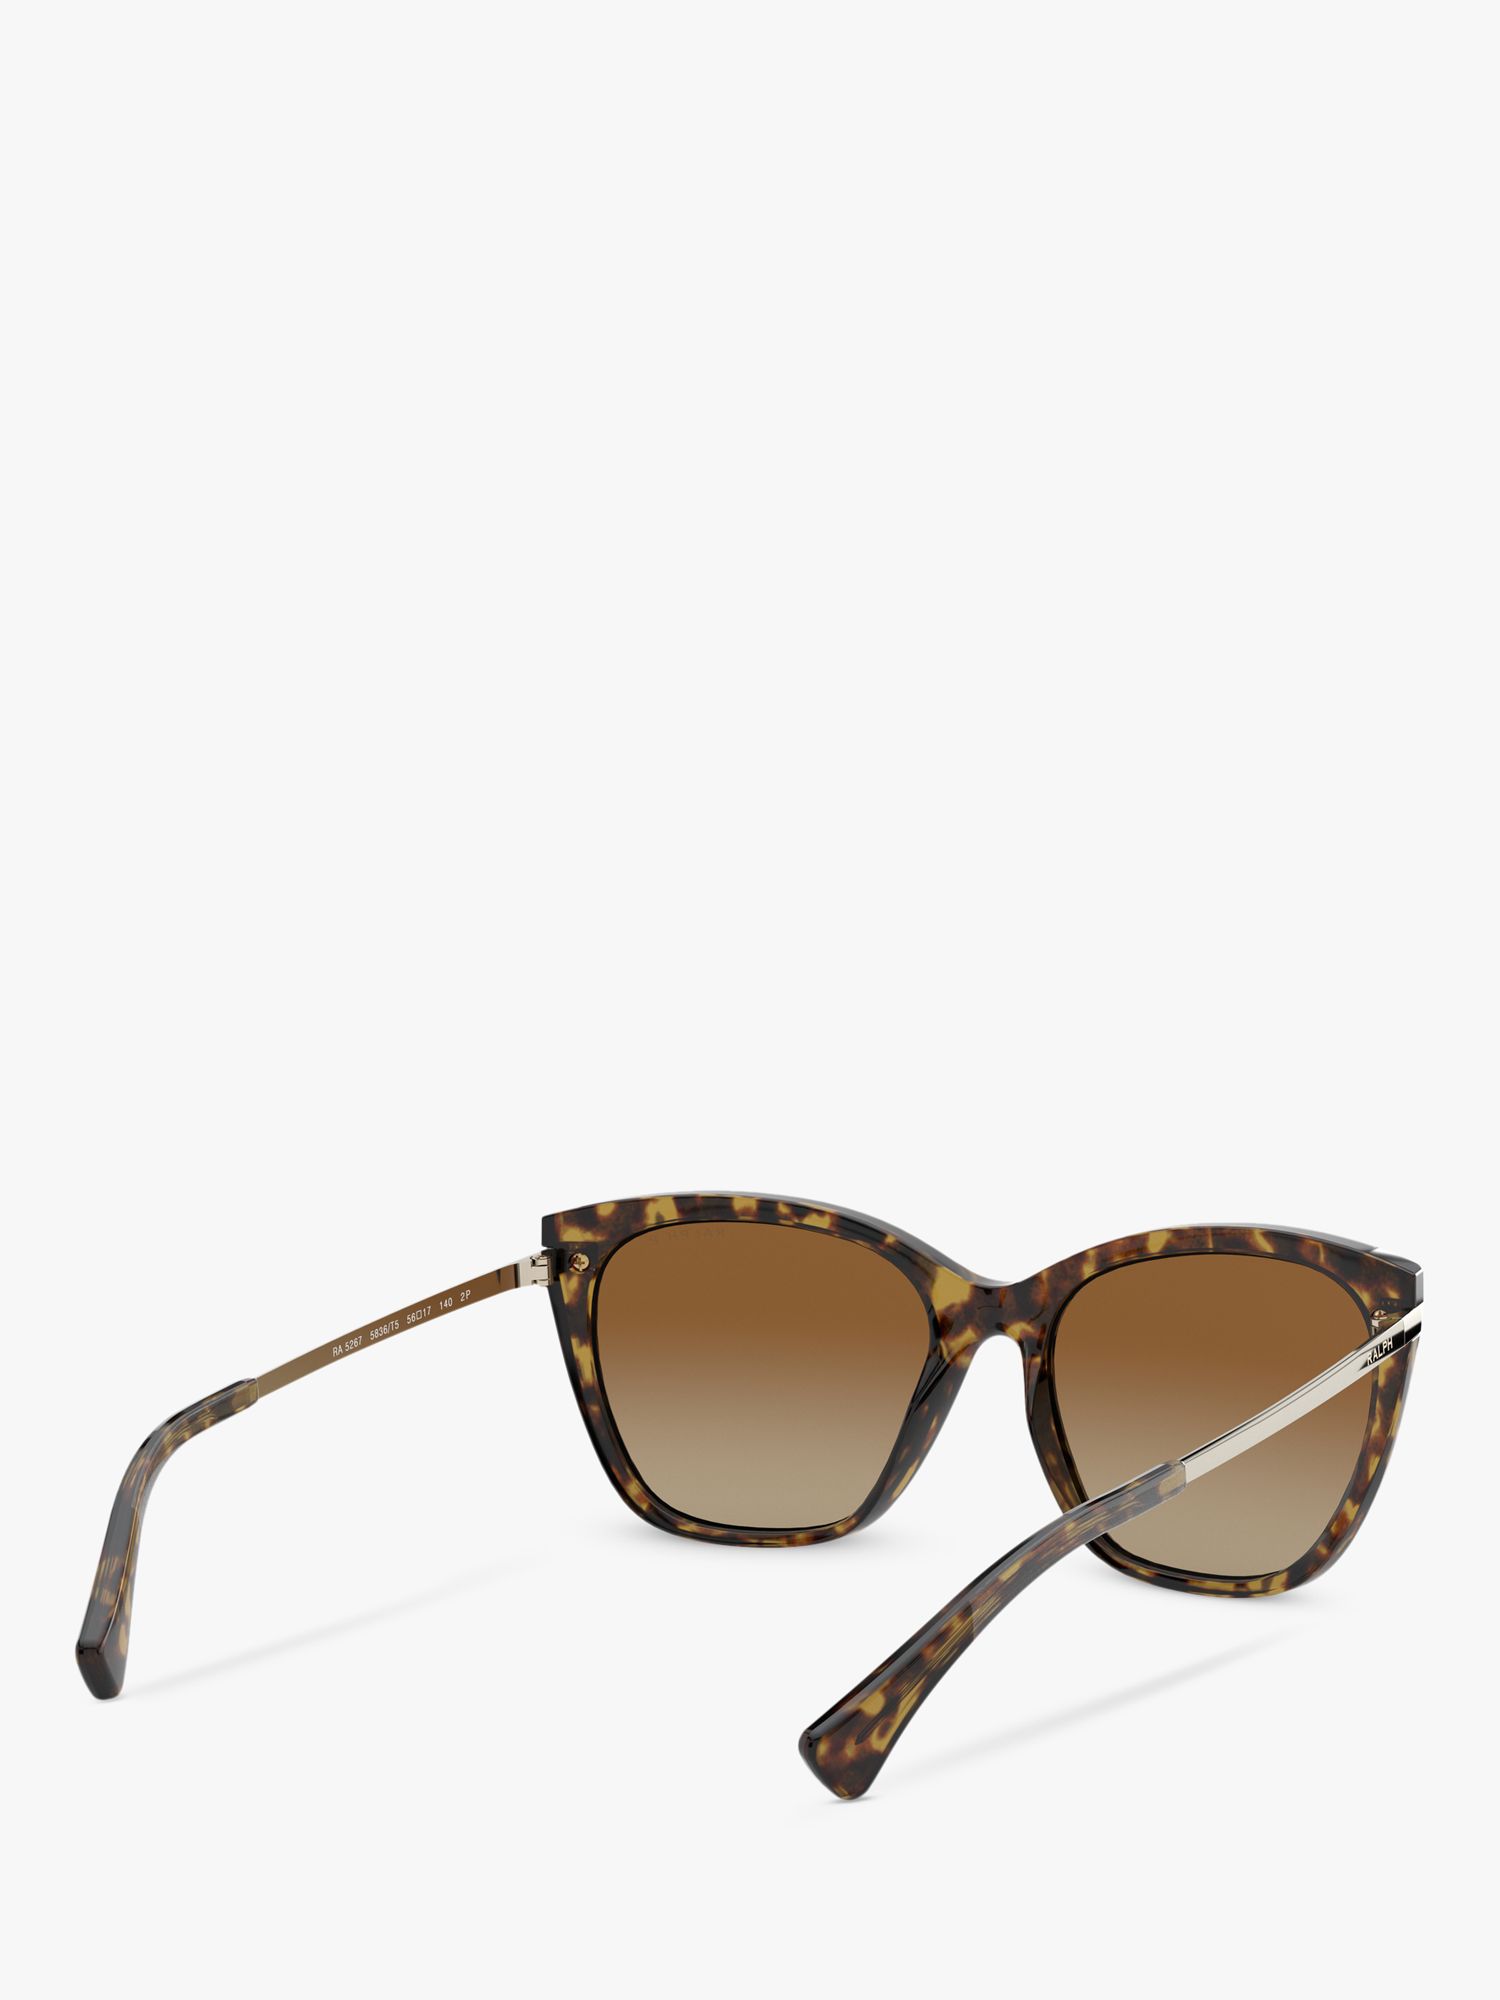 Ralph Lauren RA5267 Women's Butterfly Sunglasses, Havana/Brown Gradient ...